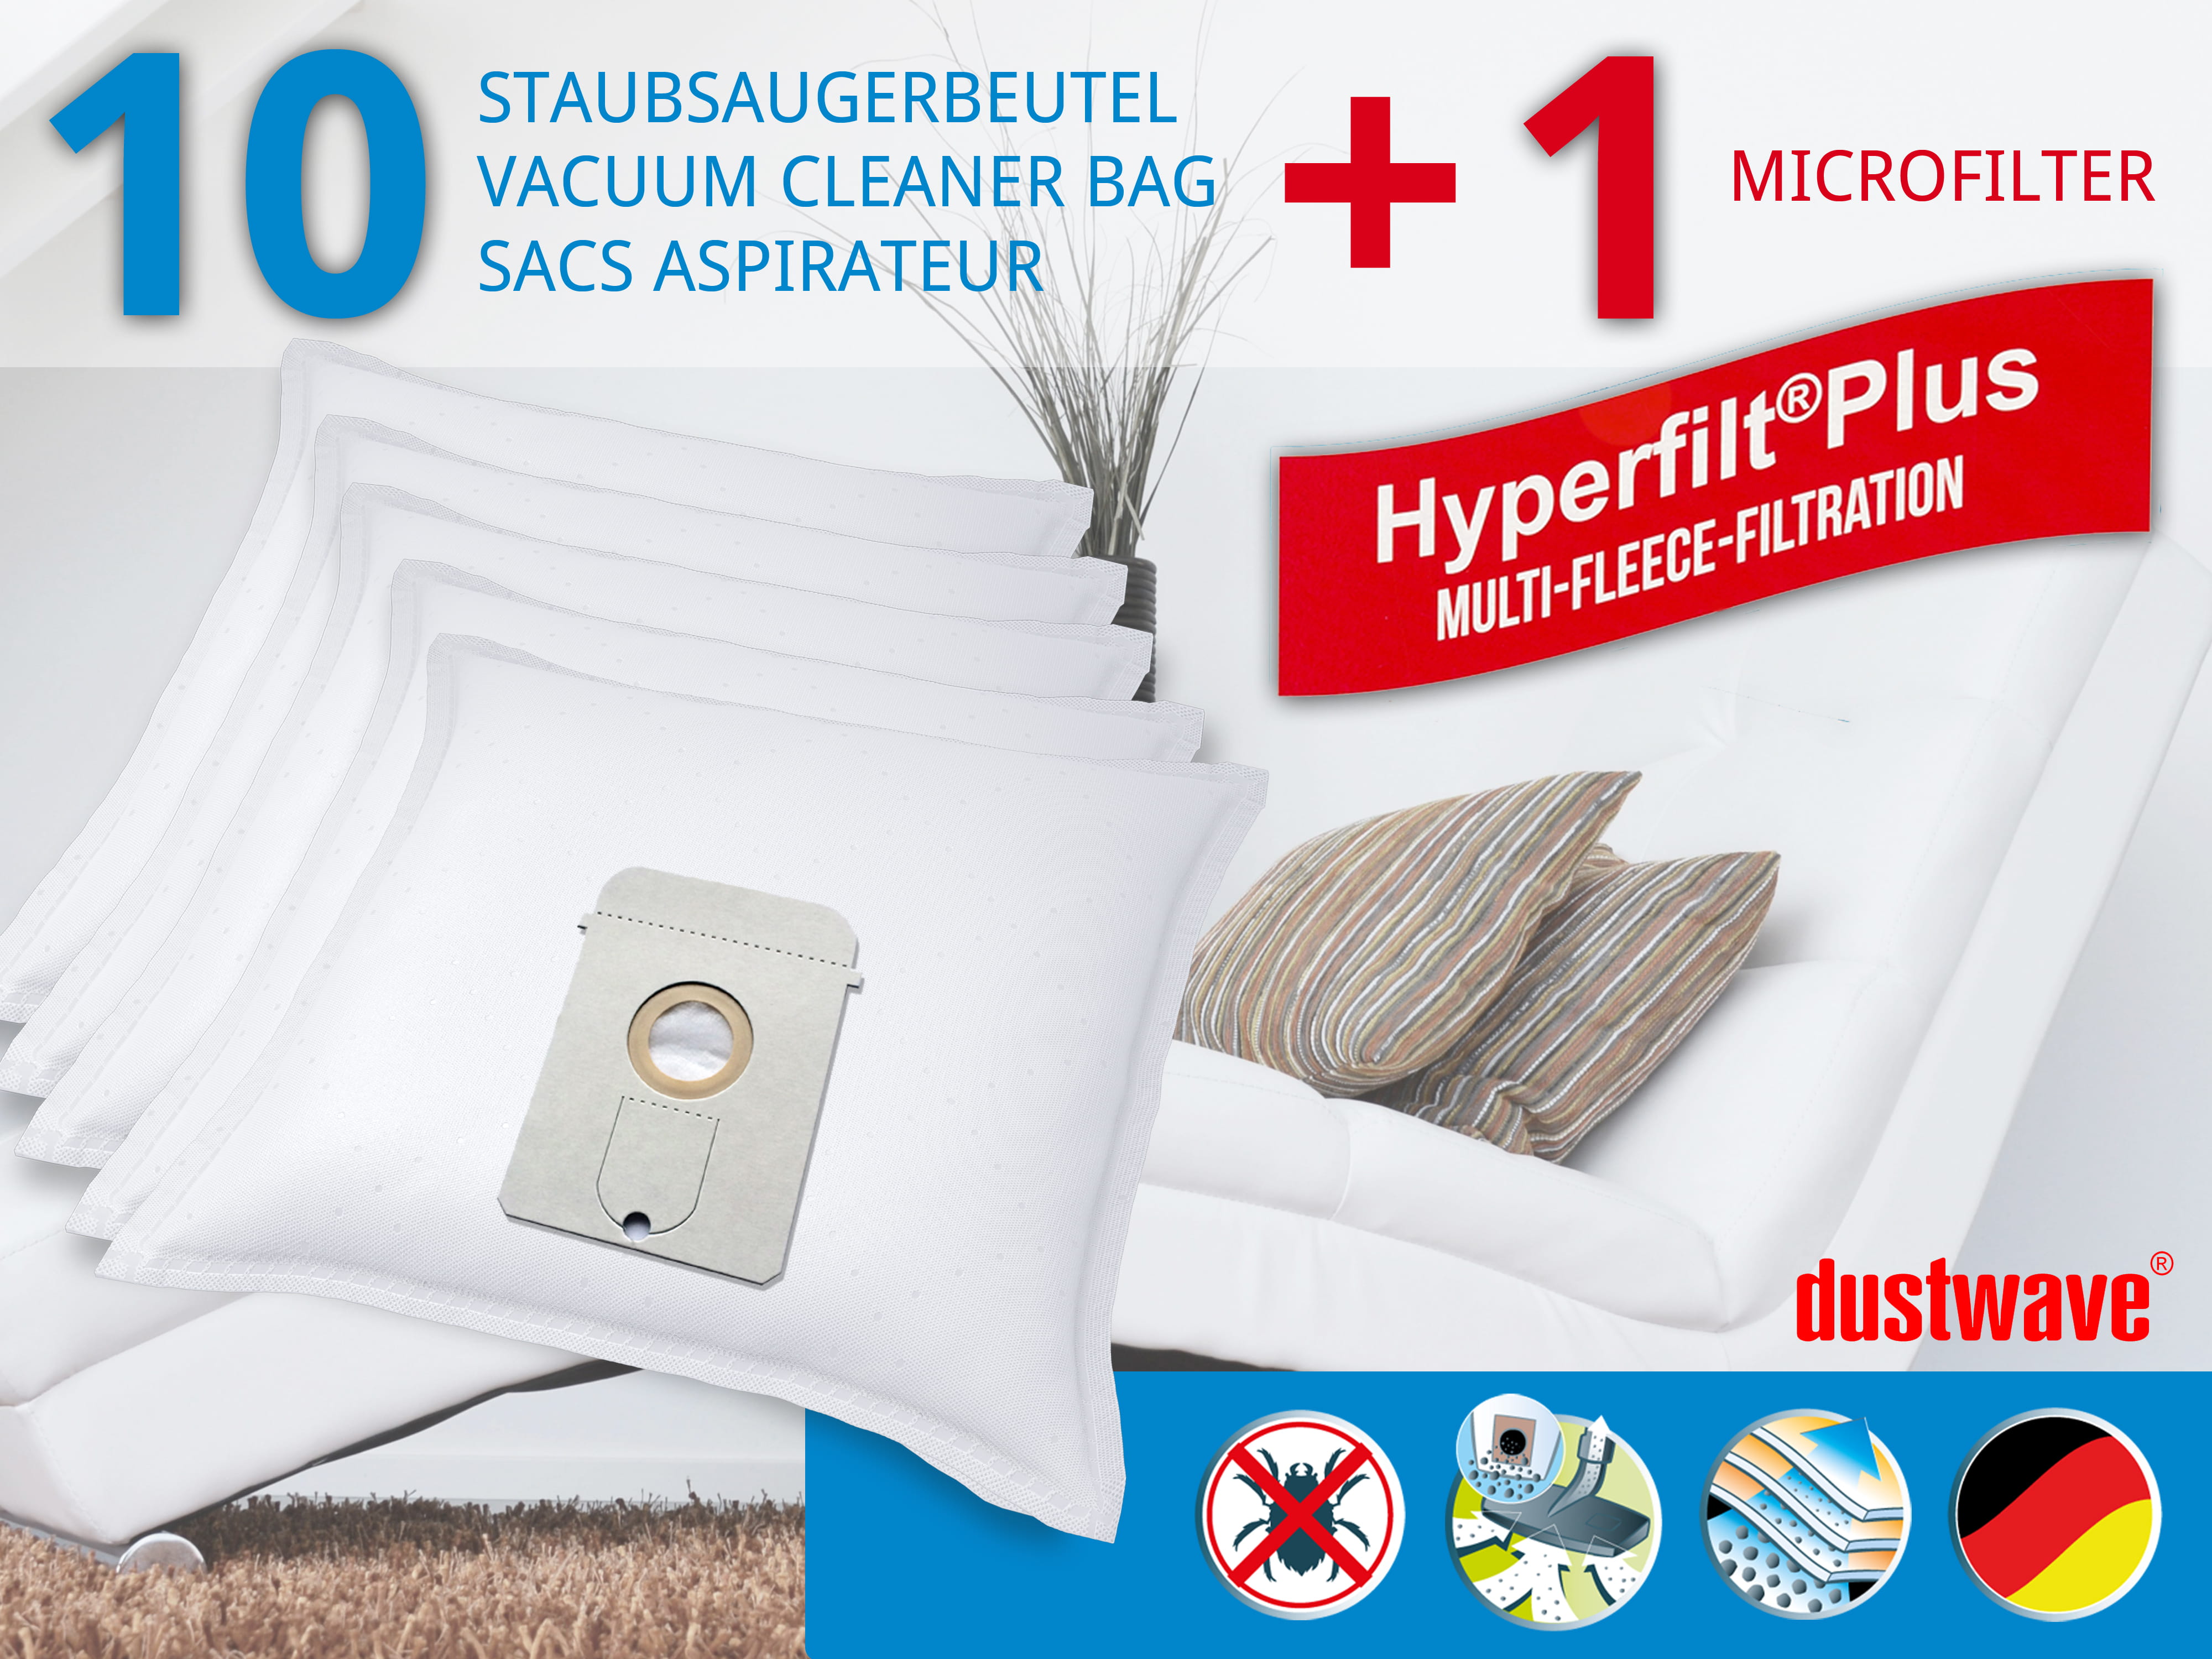 Dustwave® 10 Staubsaugerbeutel für AEG Vampyr 881 i Autotronic - hocheffizient, mehrlagiges Mikrovlies mit Hygieneverschluss - Made in Germany